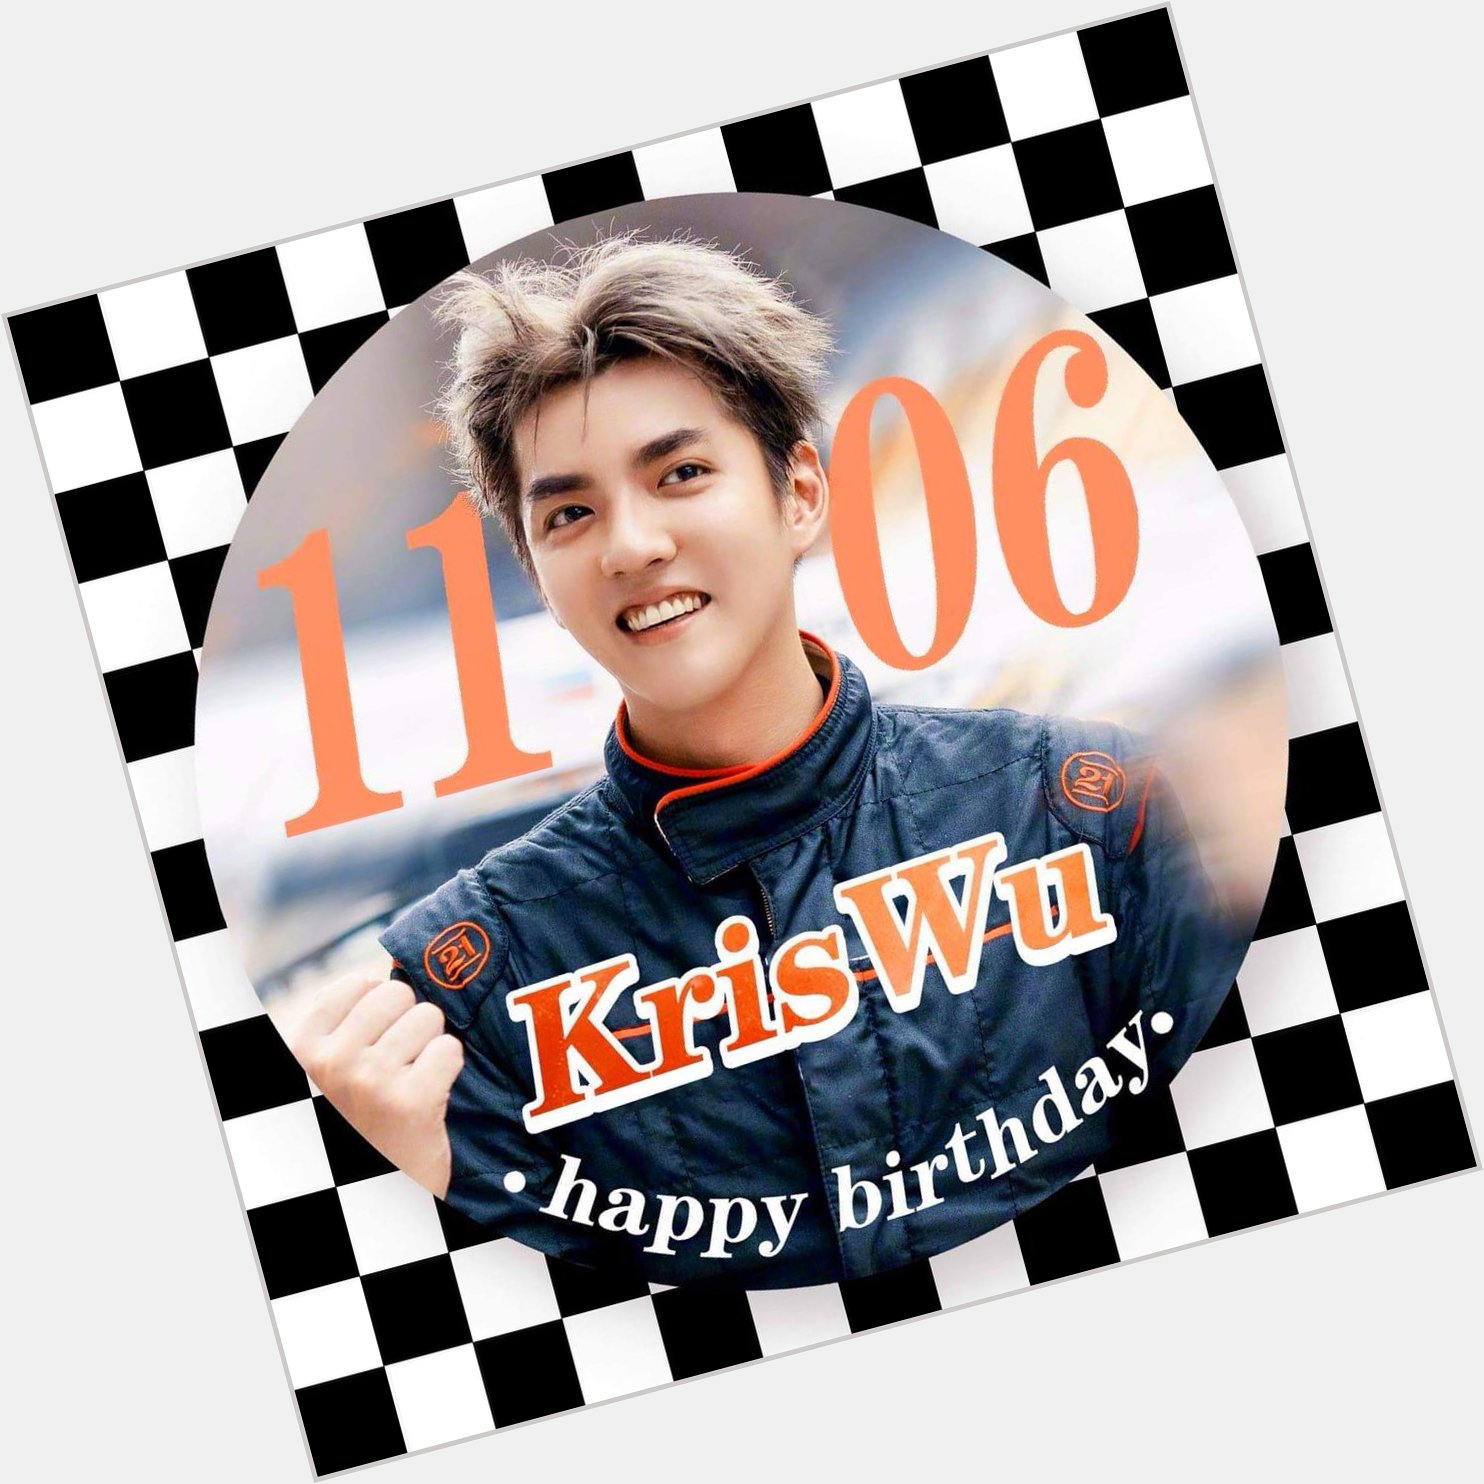  Happy Kris Wu day       Happy Birthday       